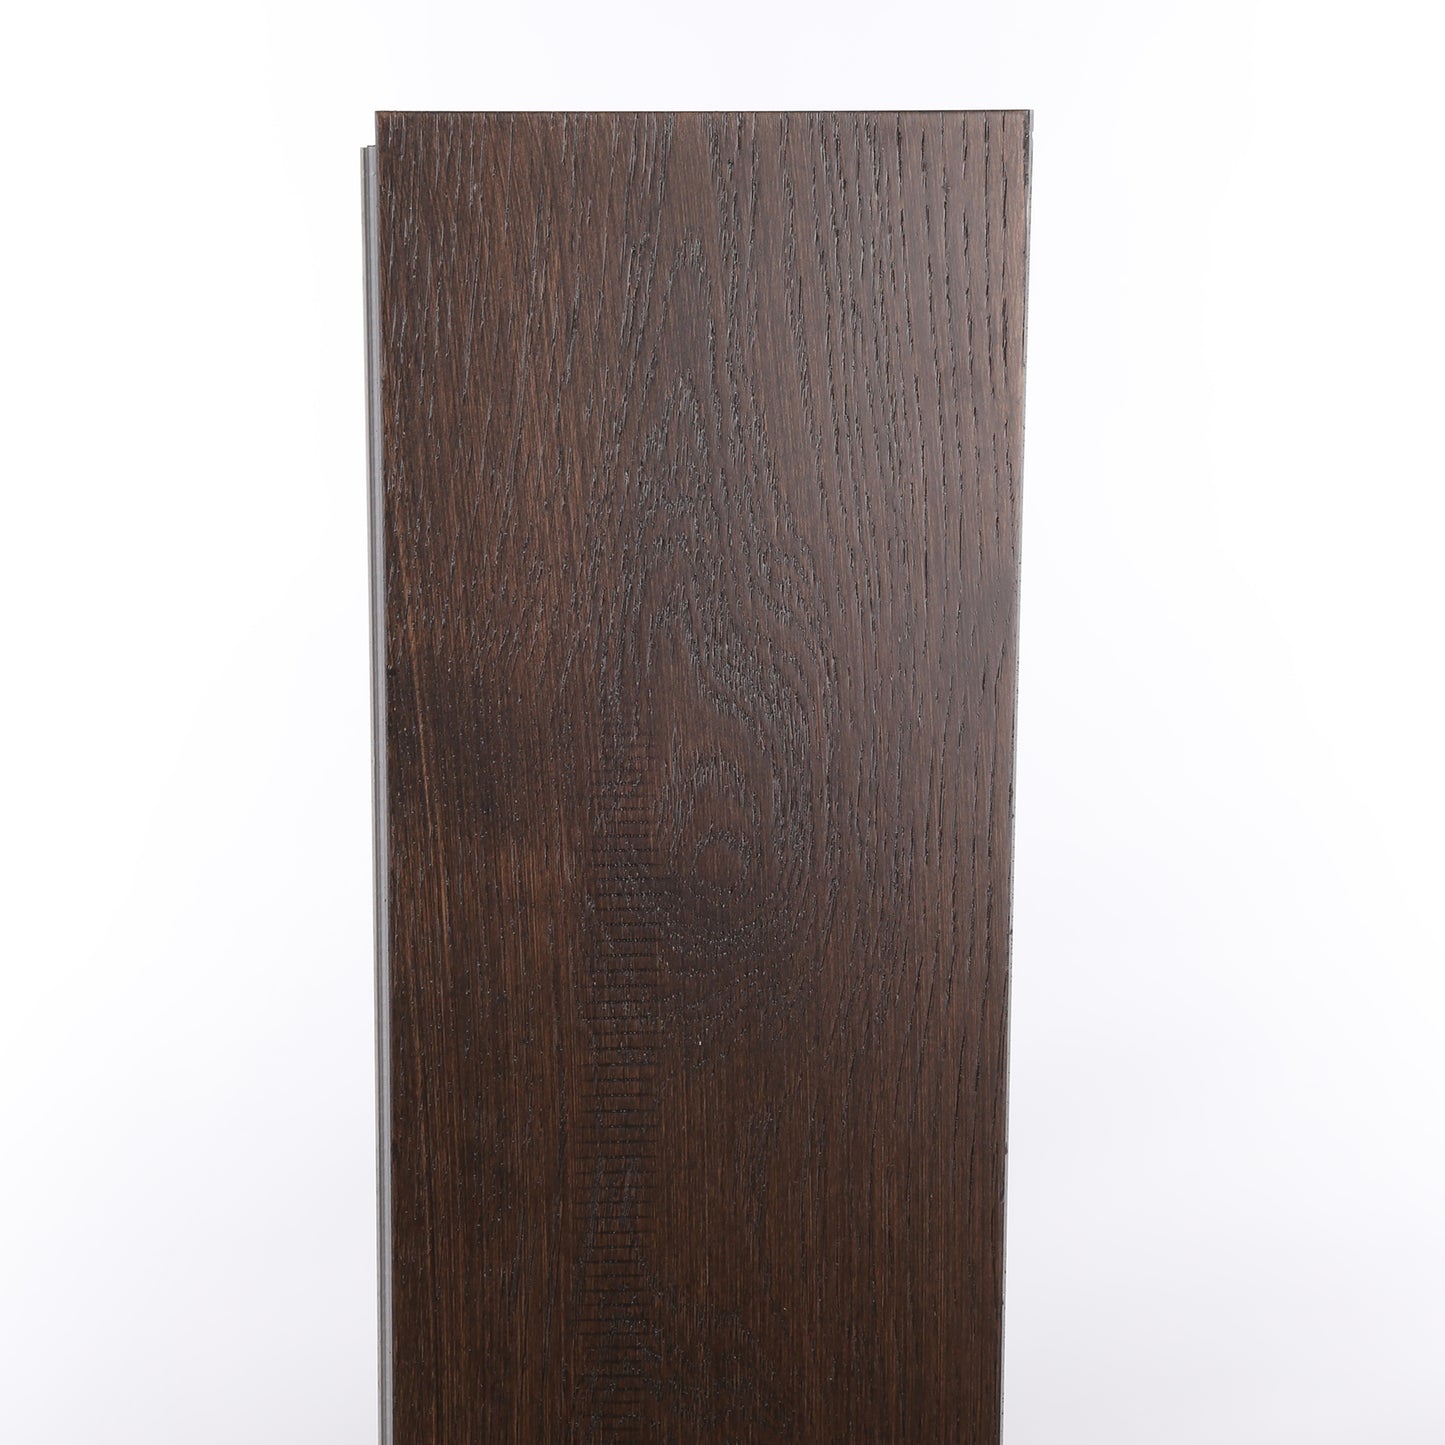 8mm Hudson Bay Waterproof Engineered Hardwood Flooring 7.48 in. Wide x Varying Length Long